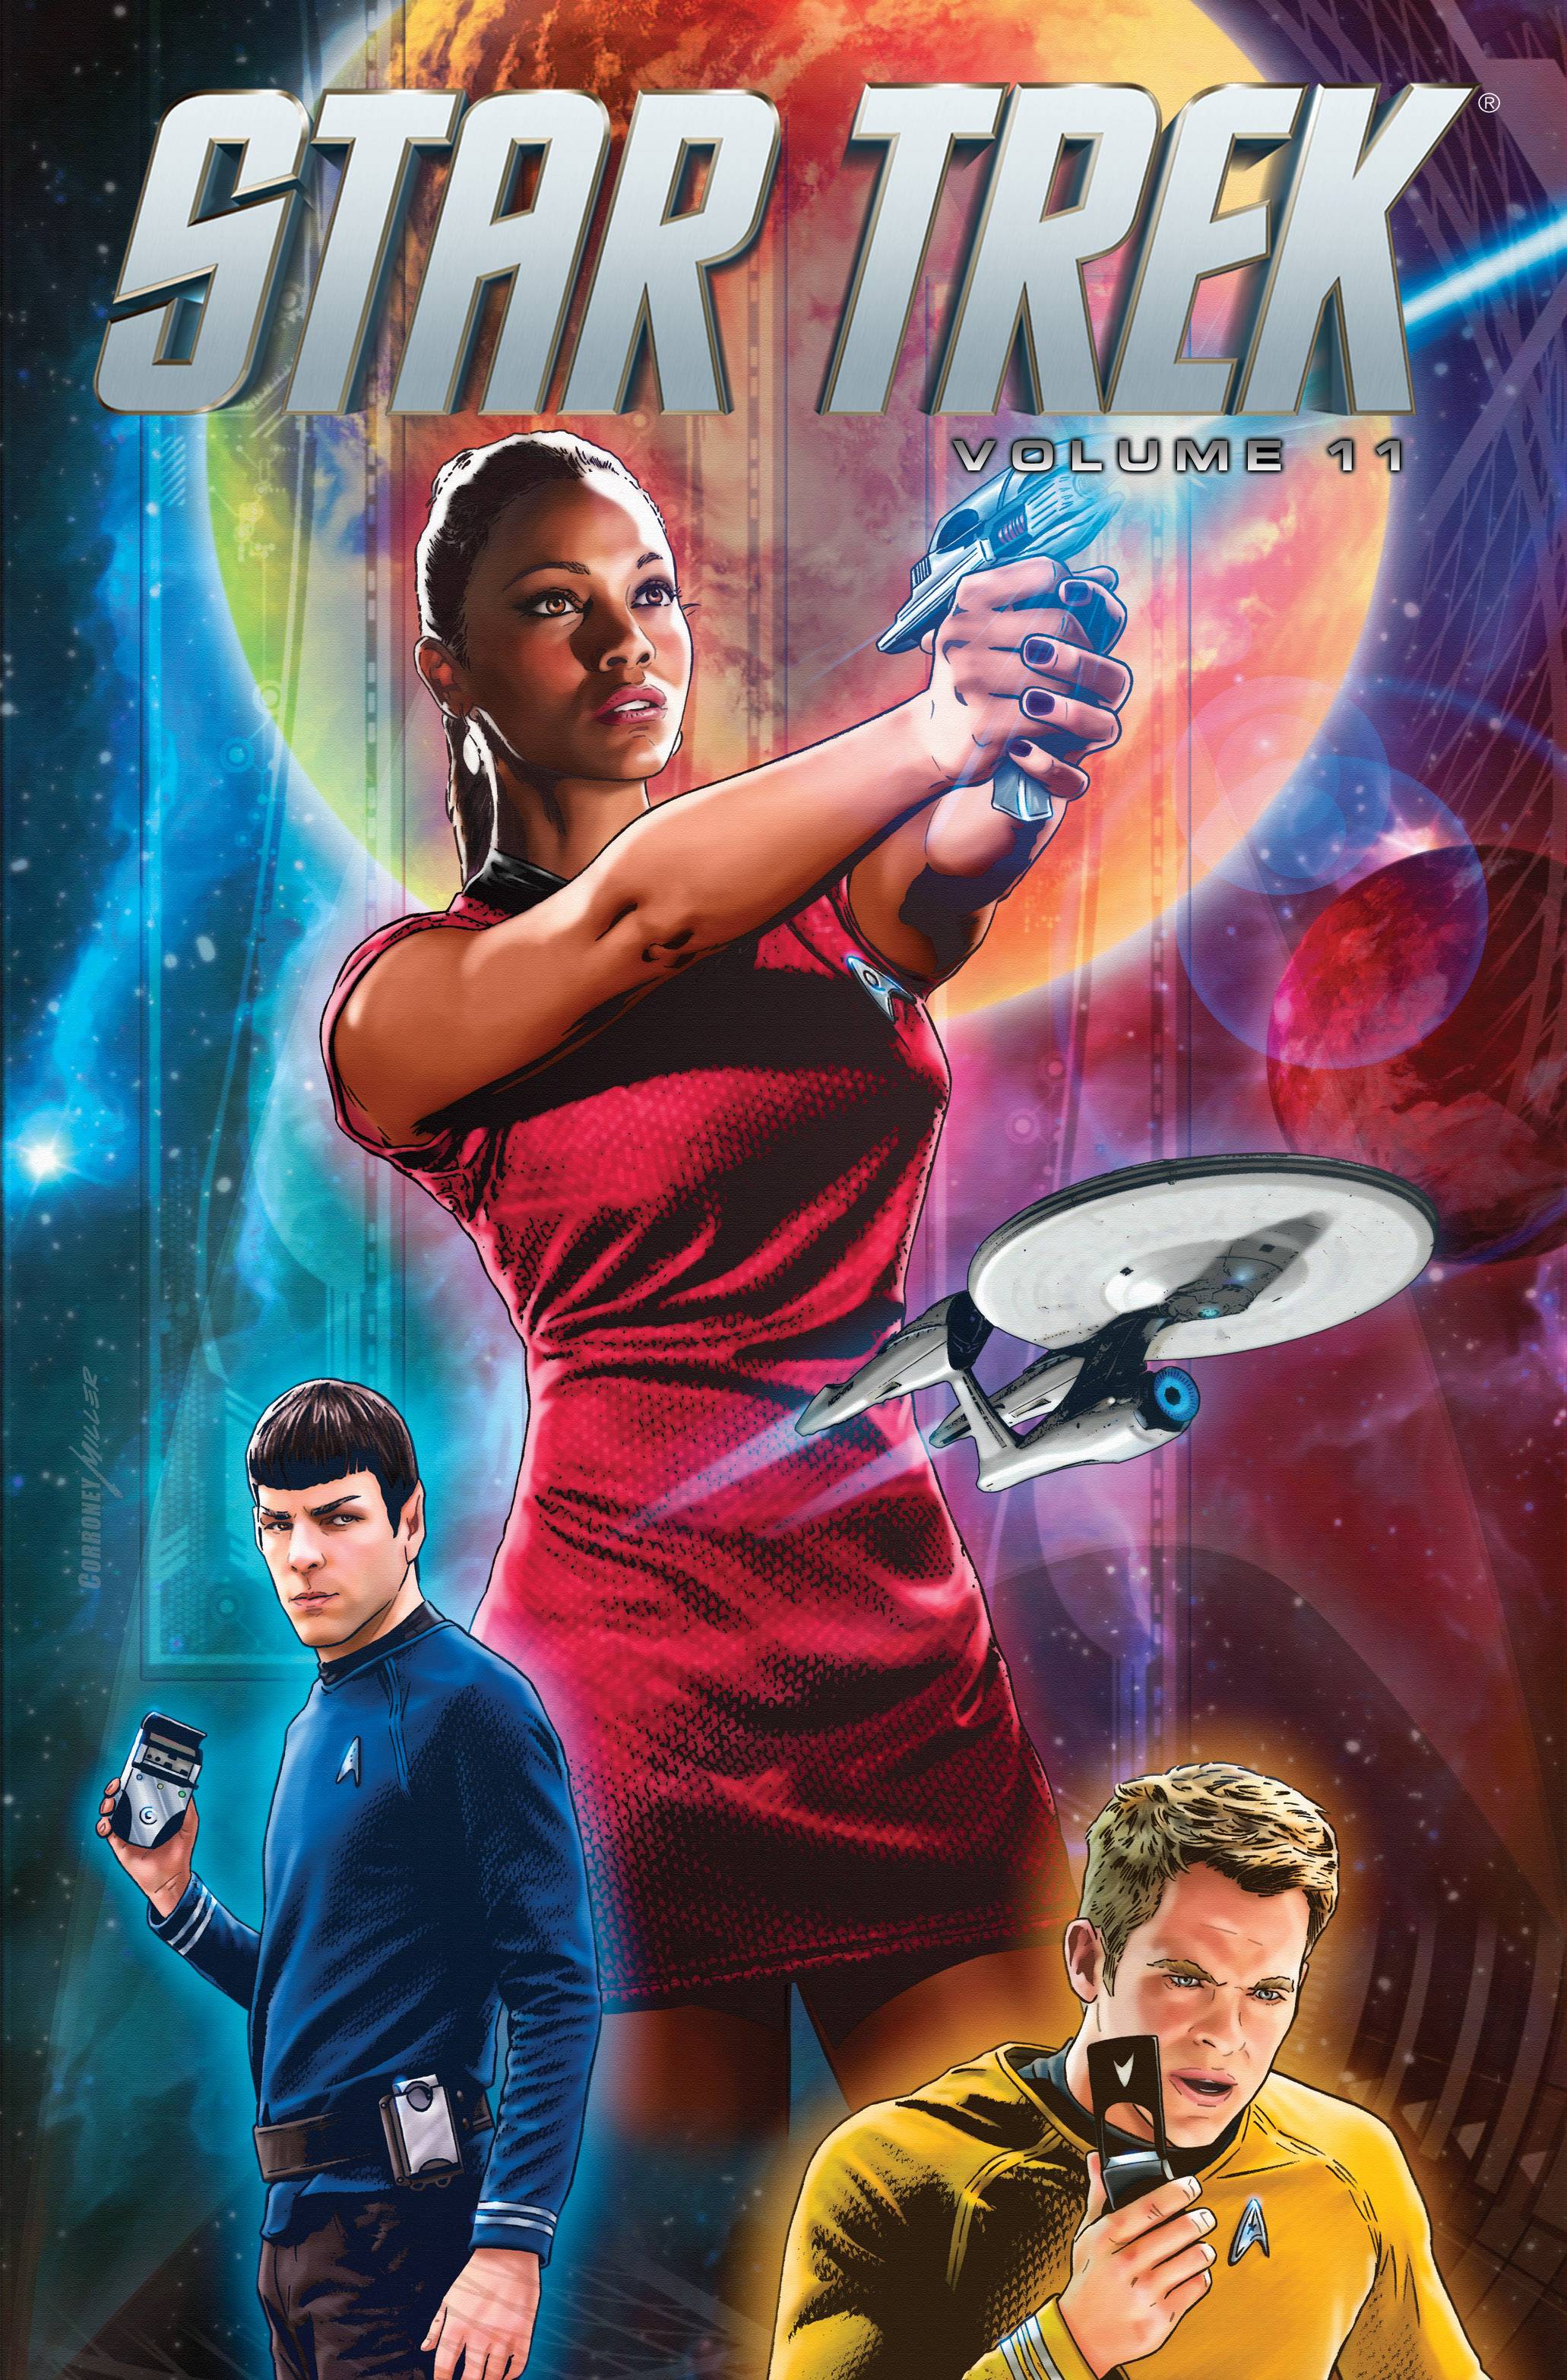 Star Trek Ongoing Graphic Novel Volume 11 Volume 11